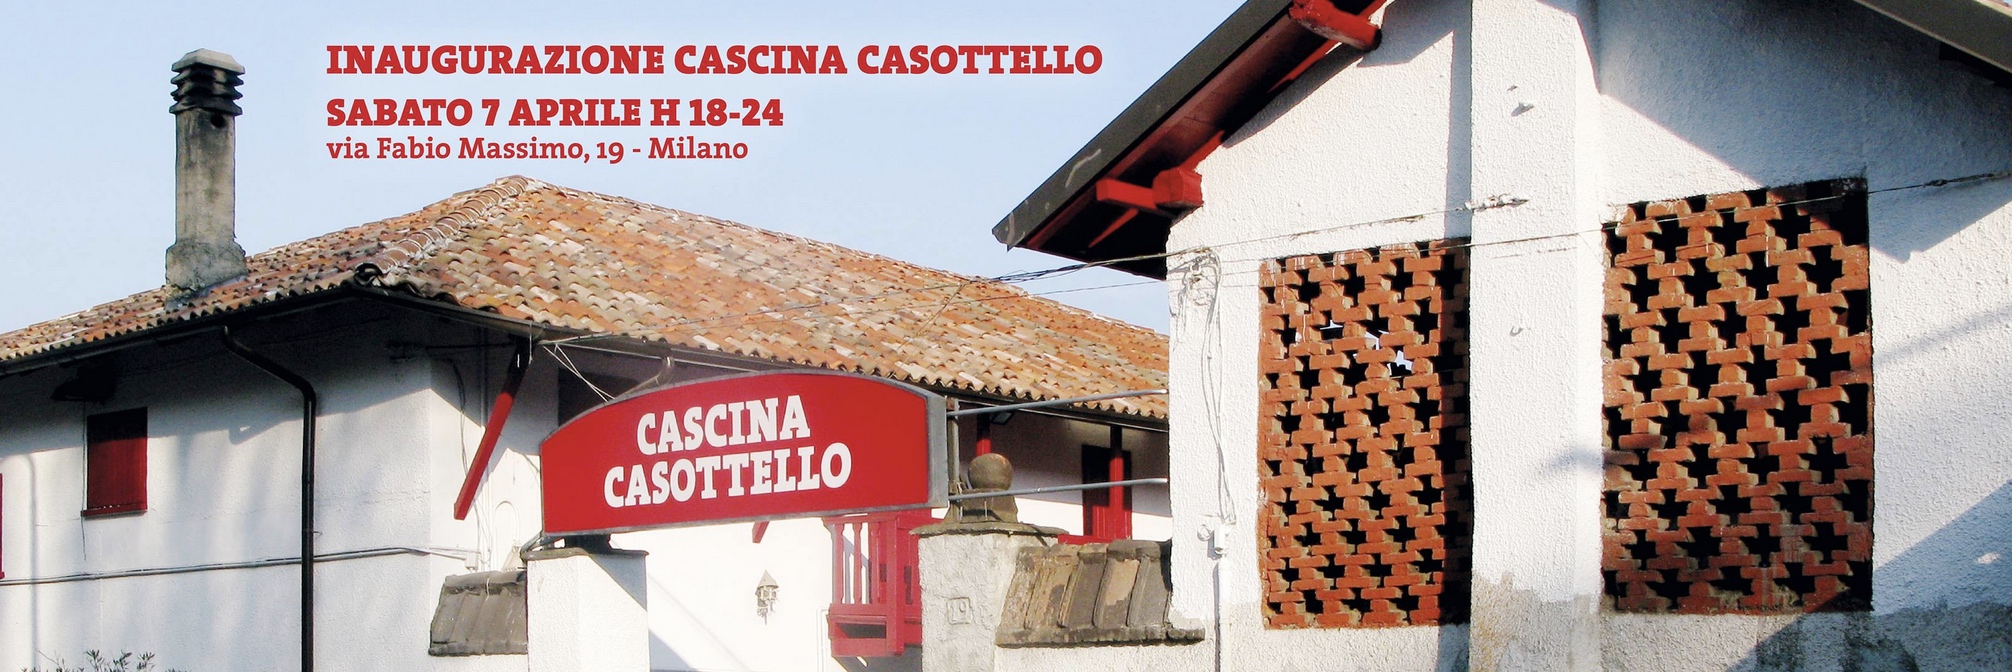 Cascina Casottello diventa un polo culturale per il quartiere della zona 4 di Milano Domani l’inaugurazione ufficiale con festa